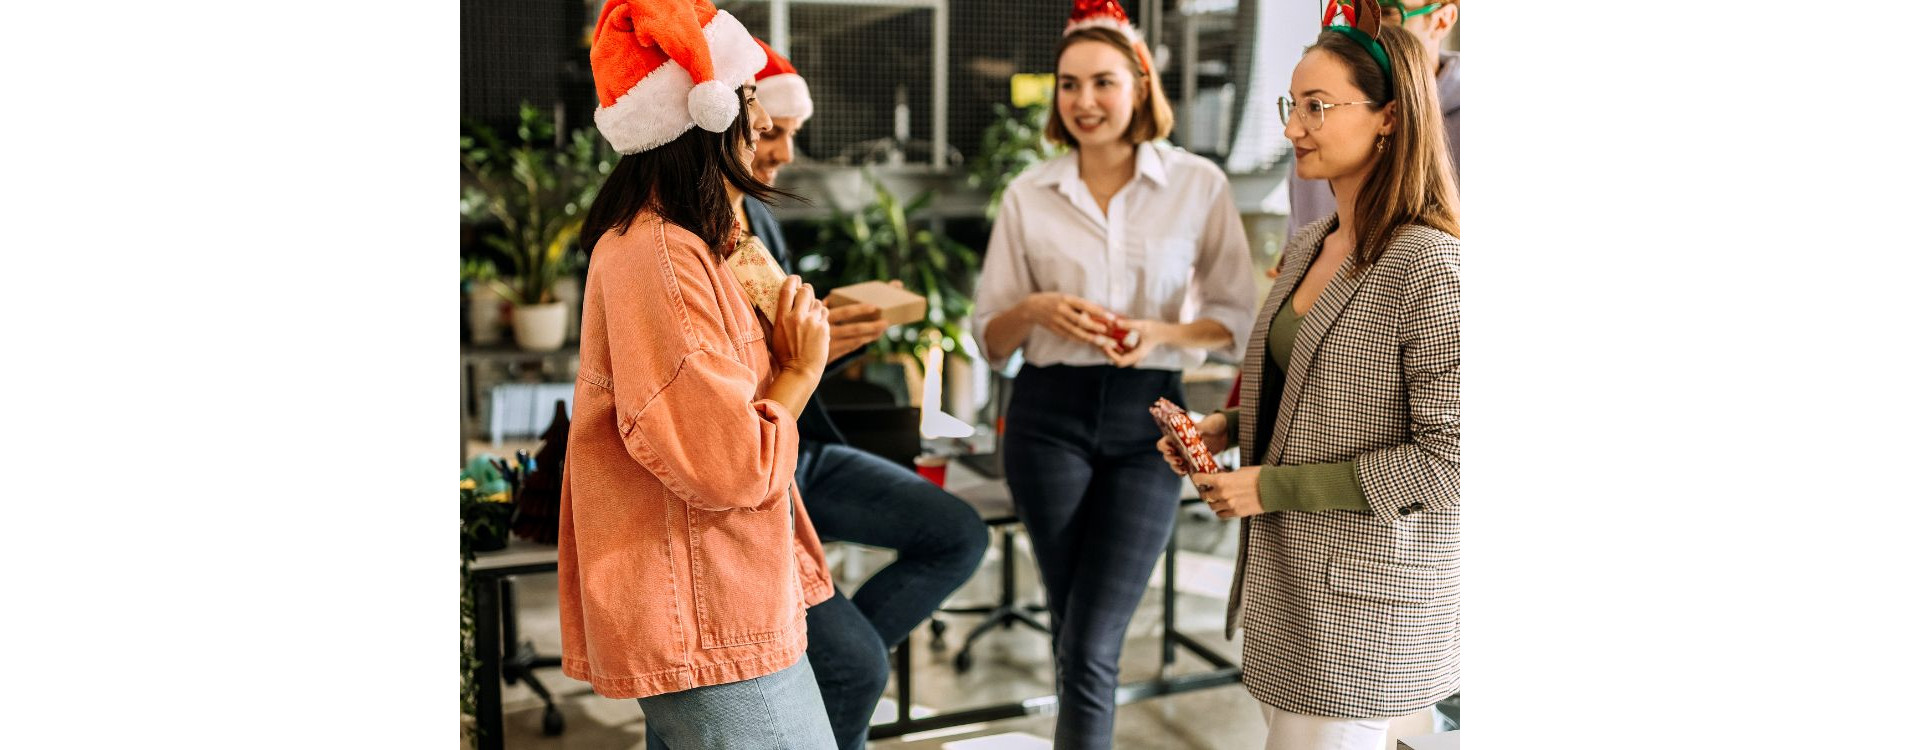 Des idées cadeaux insolites pour un Secret Santa entre amis ou entre collègues au travail ?